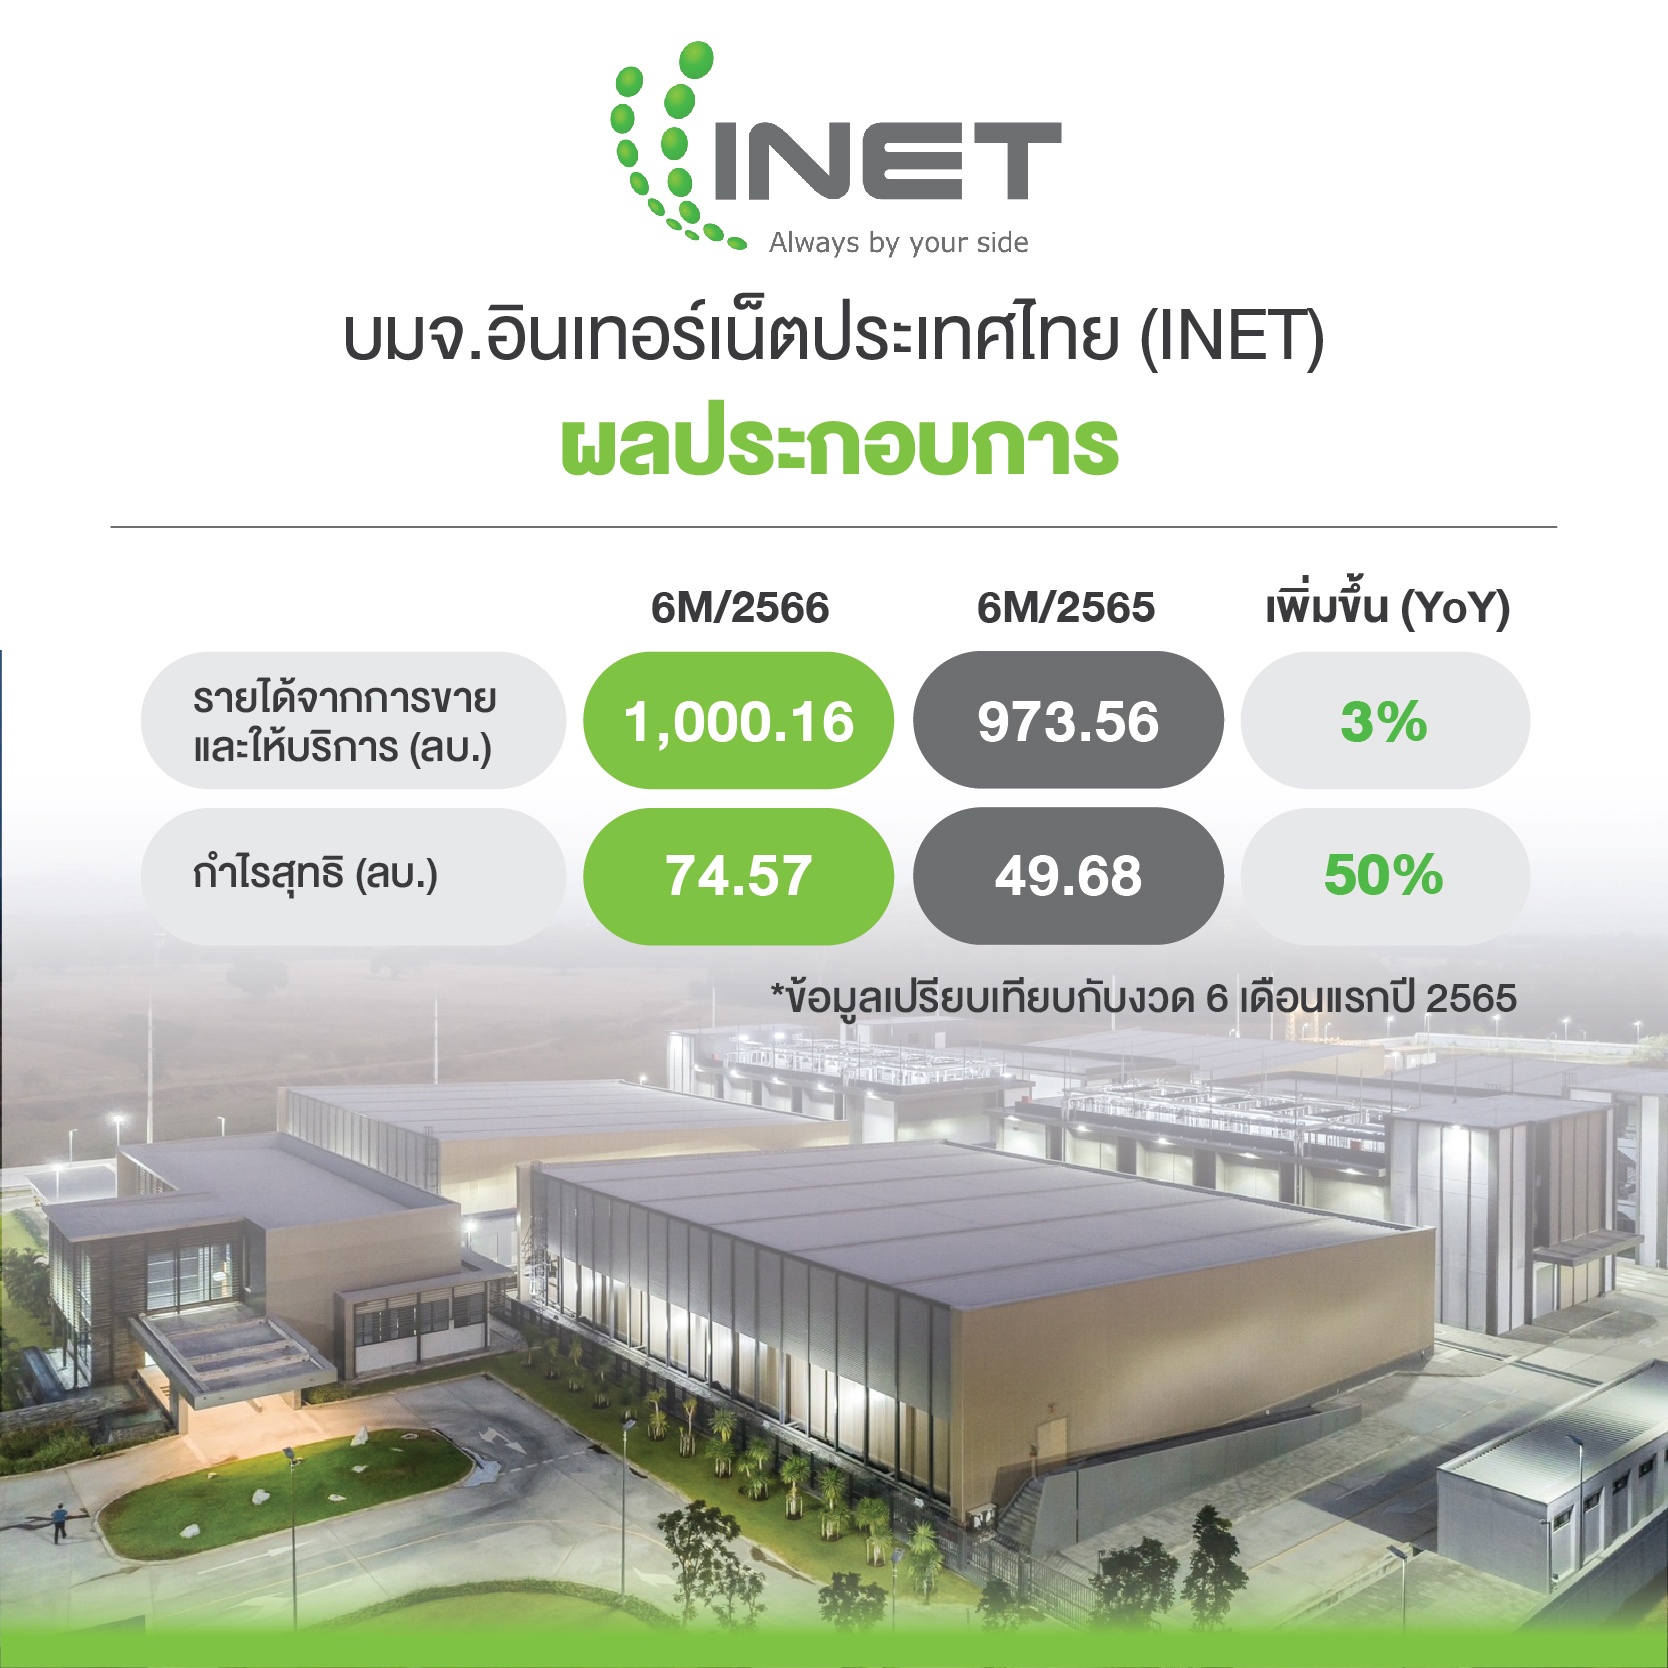 ผลประกอบการ บมจ.อินเทอร์เน็ตประเทศไทย (INET)